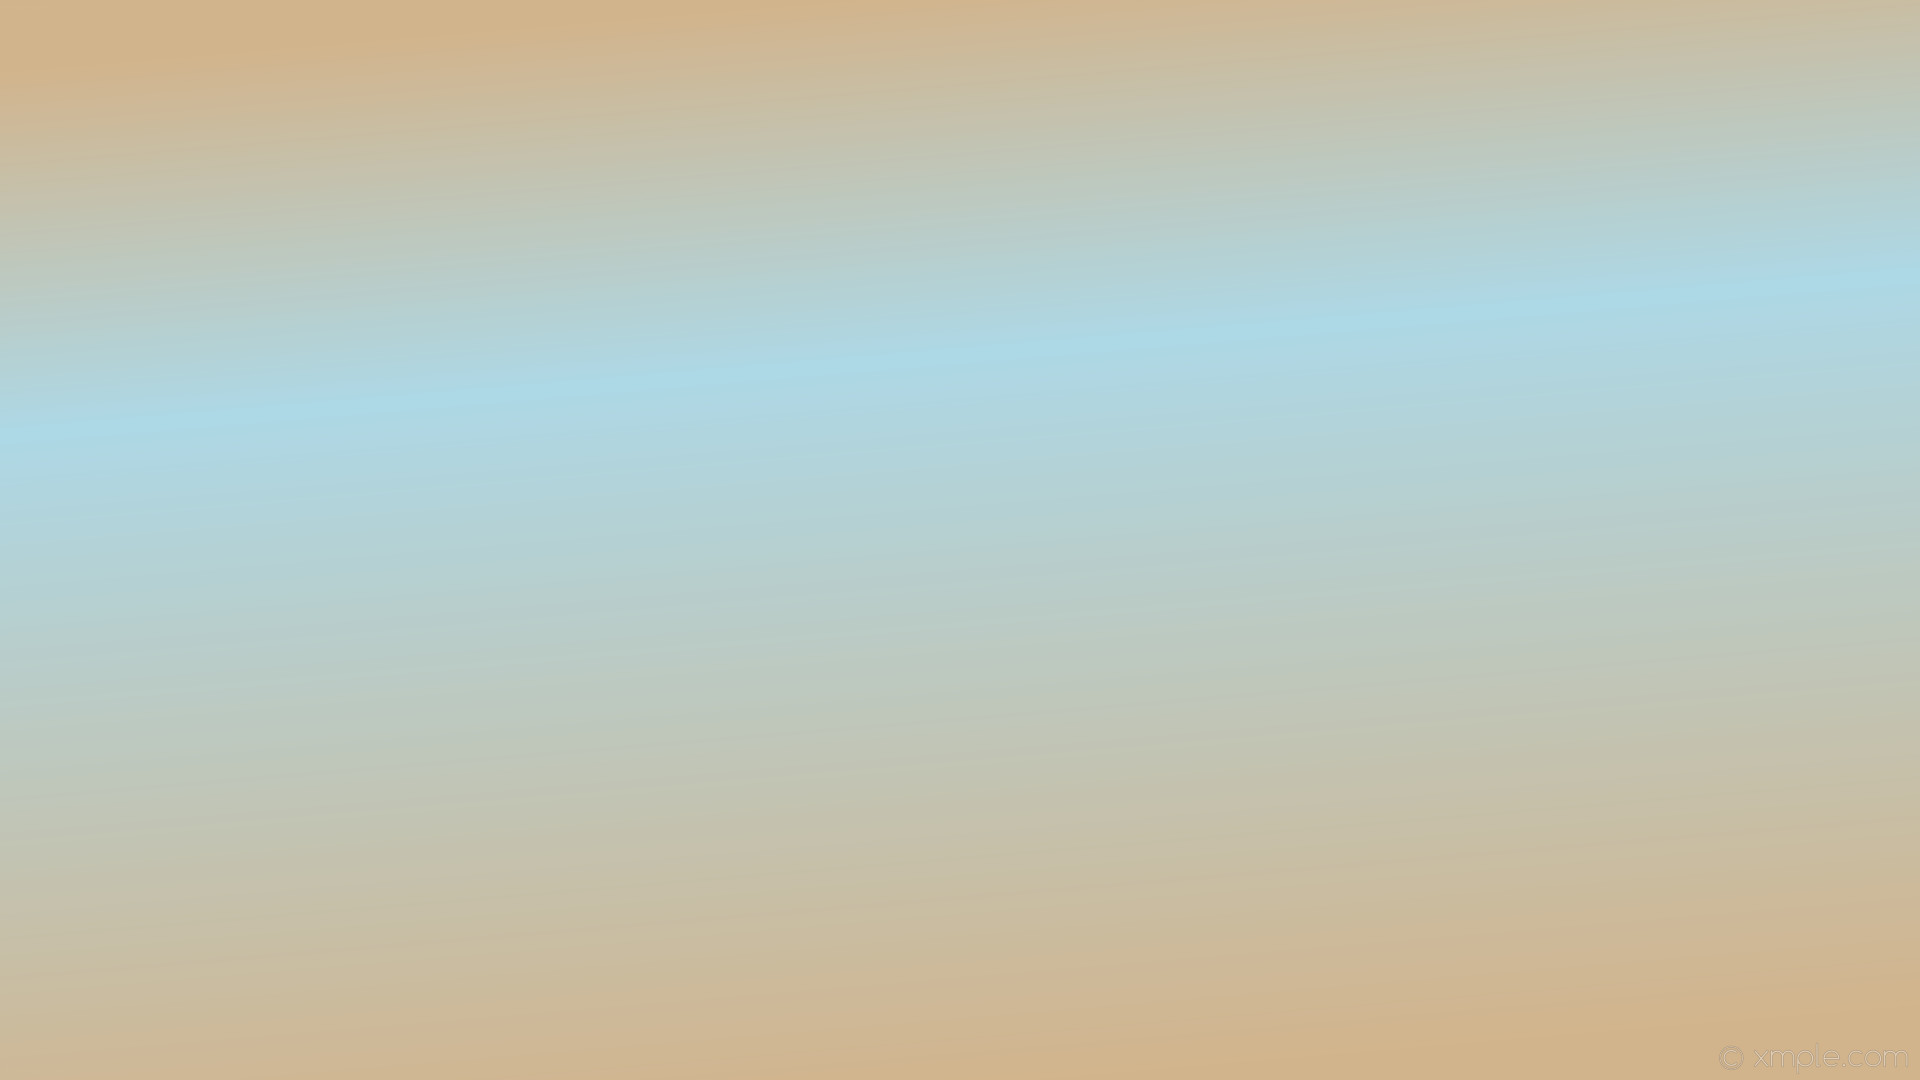 1920x1080 wallpaper brown highlight linear gradient blue tan light blue #d2b48c  #add8e6 105Â° 33